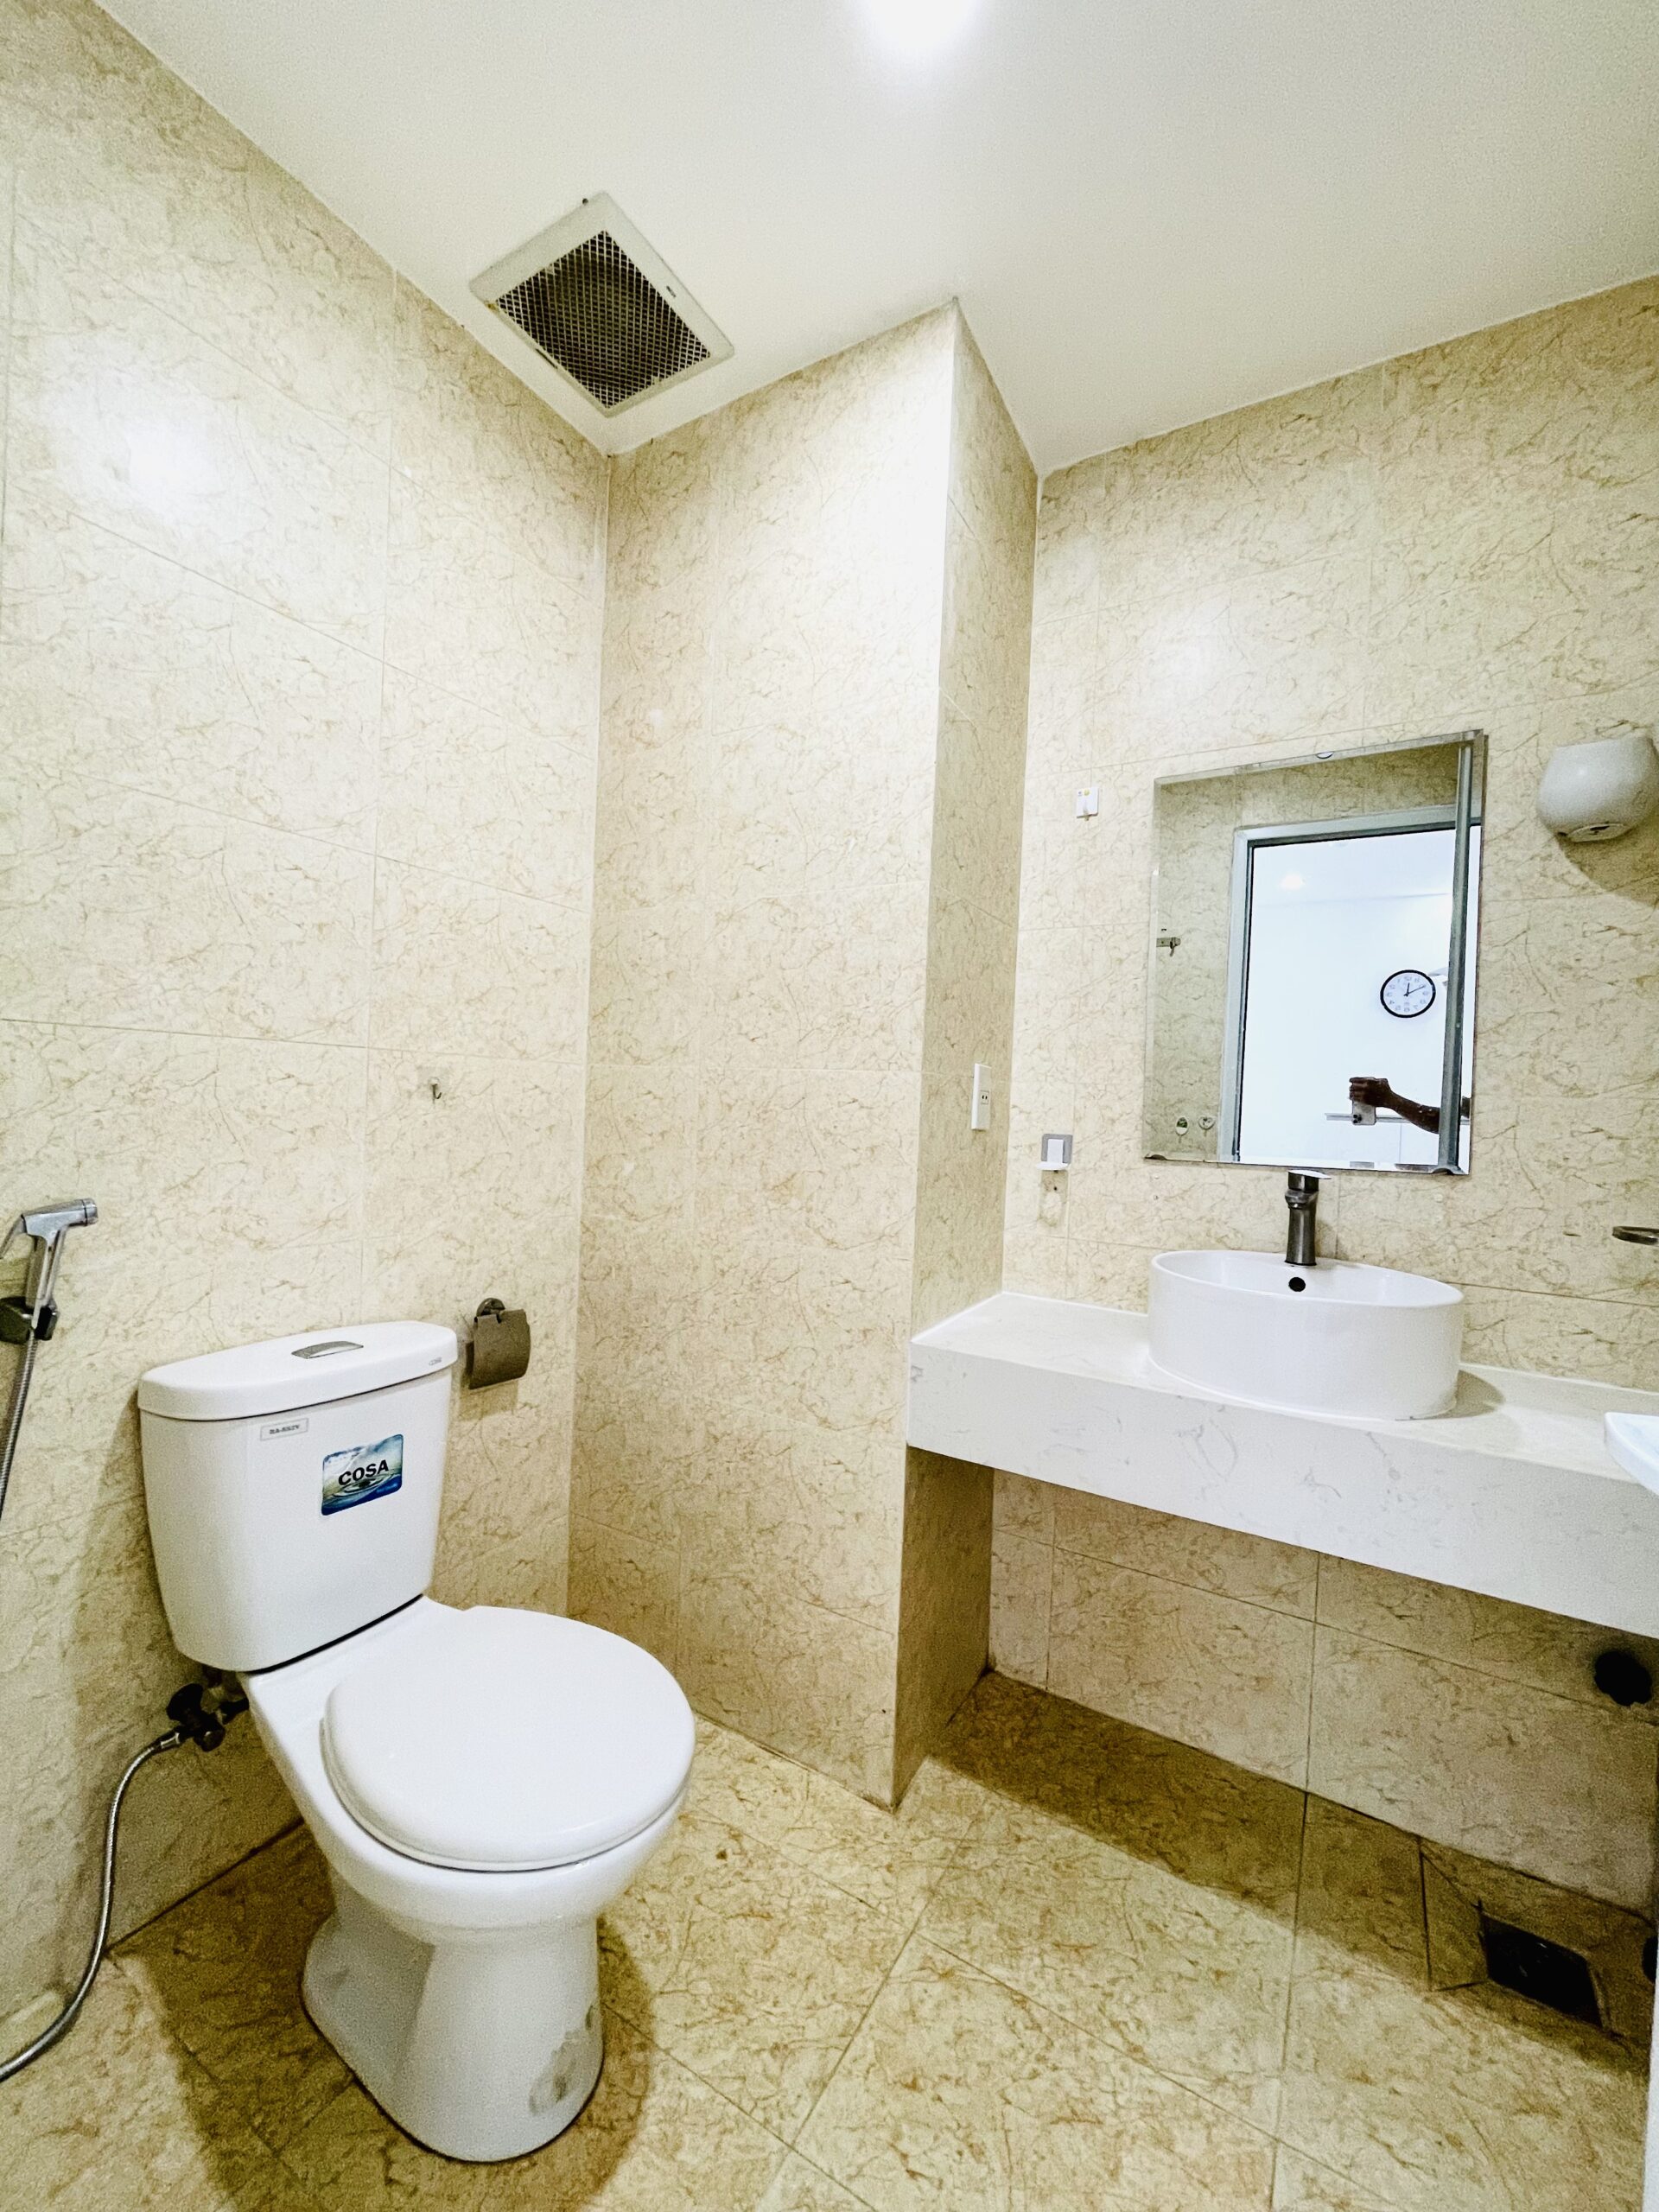 Phòng toilet chung - Căn hộ Mường Thanh Viễn Triều tầng 10 OC2A | Đông nam, rất mát